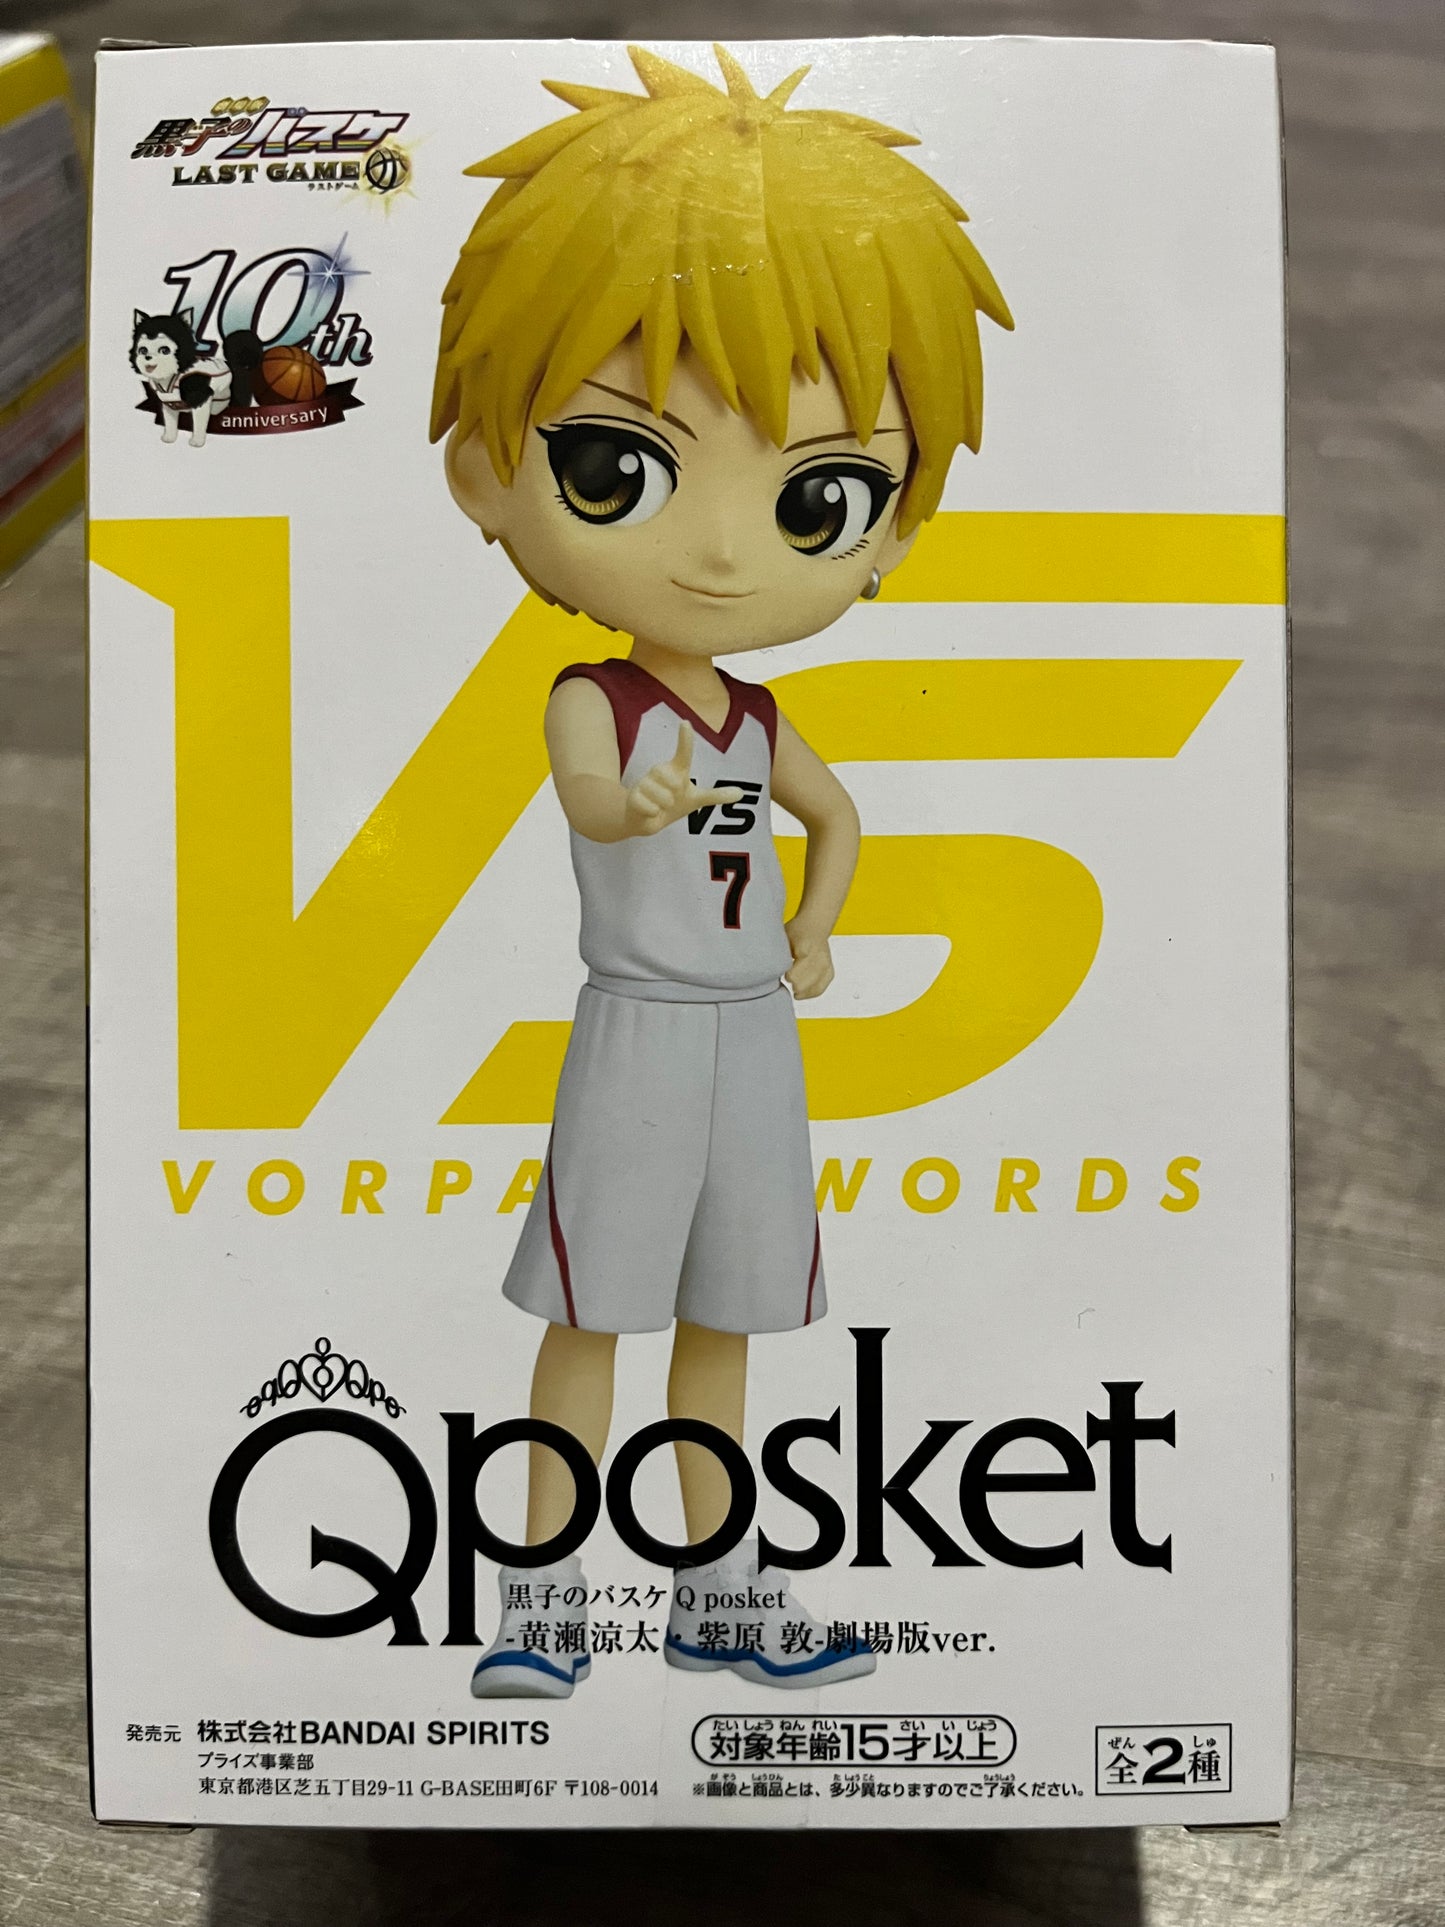 Kuroko no Basket - Ryota Kise QPosket